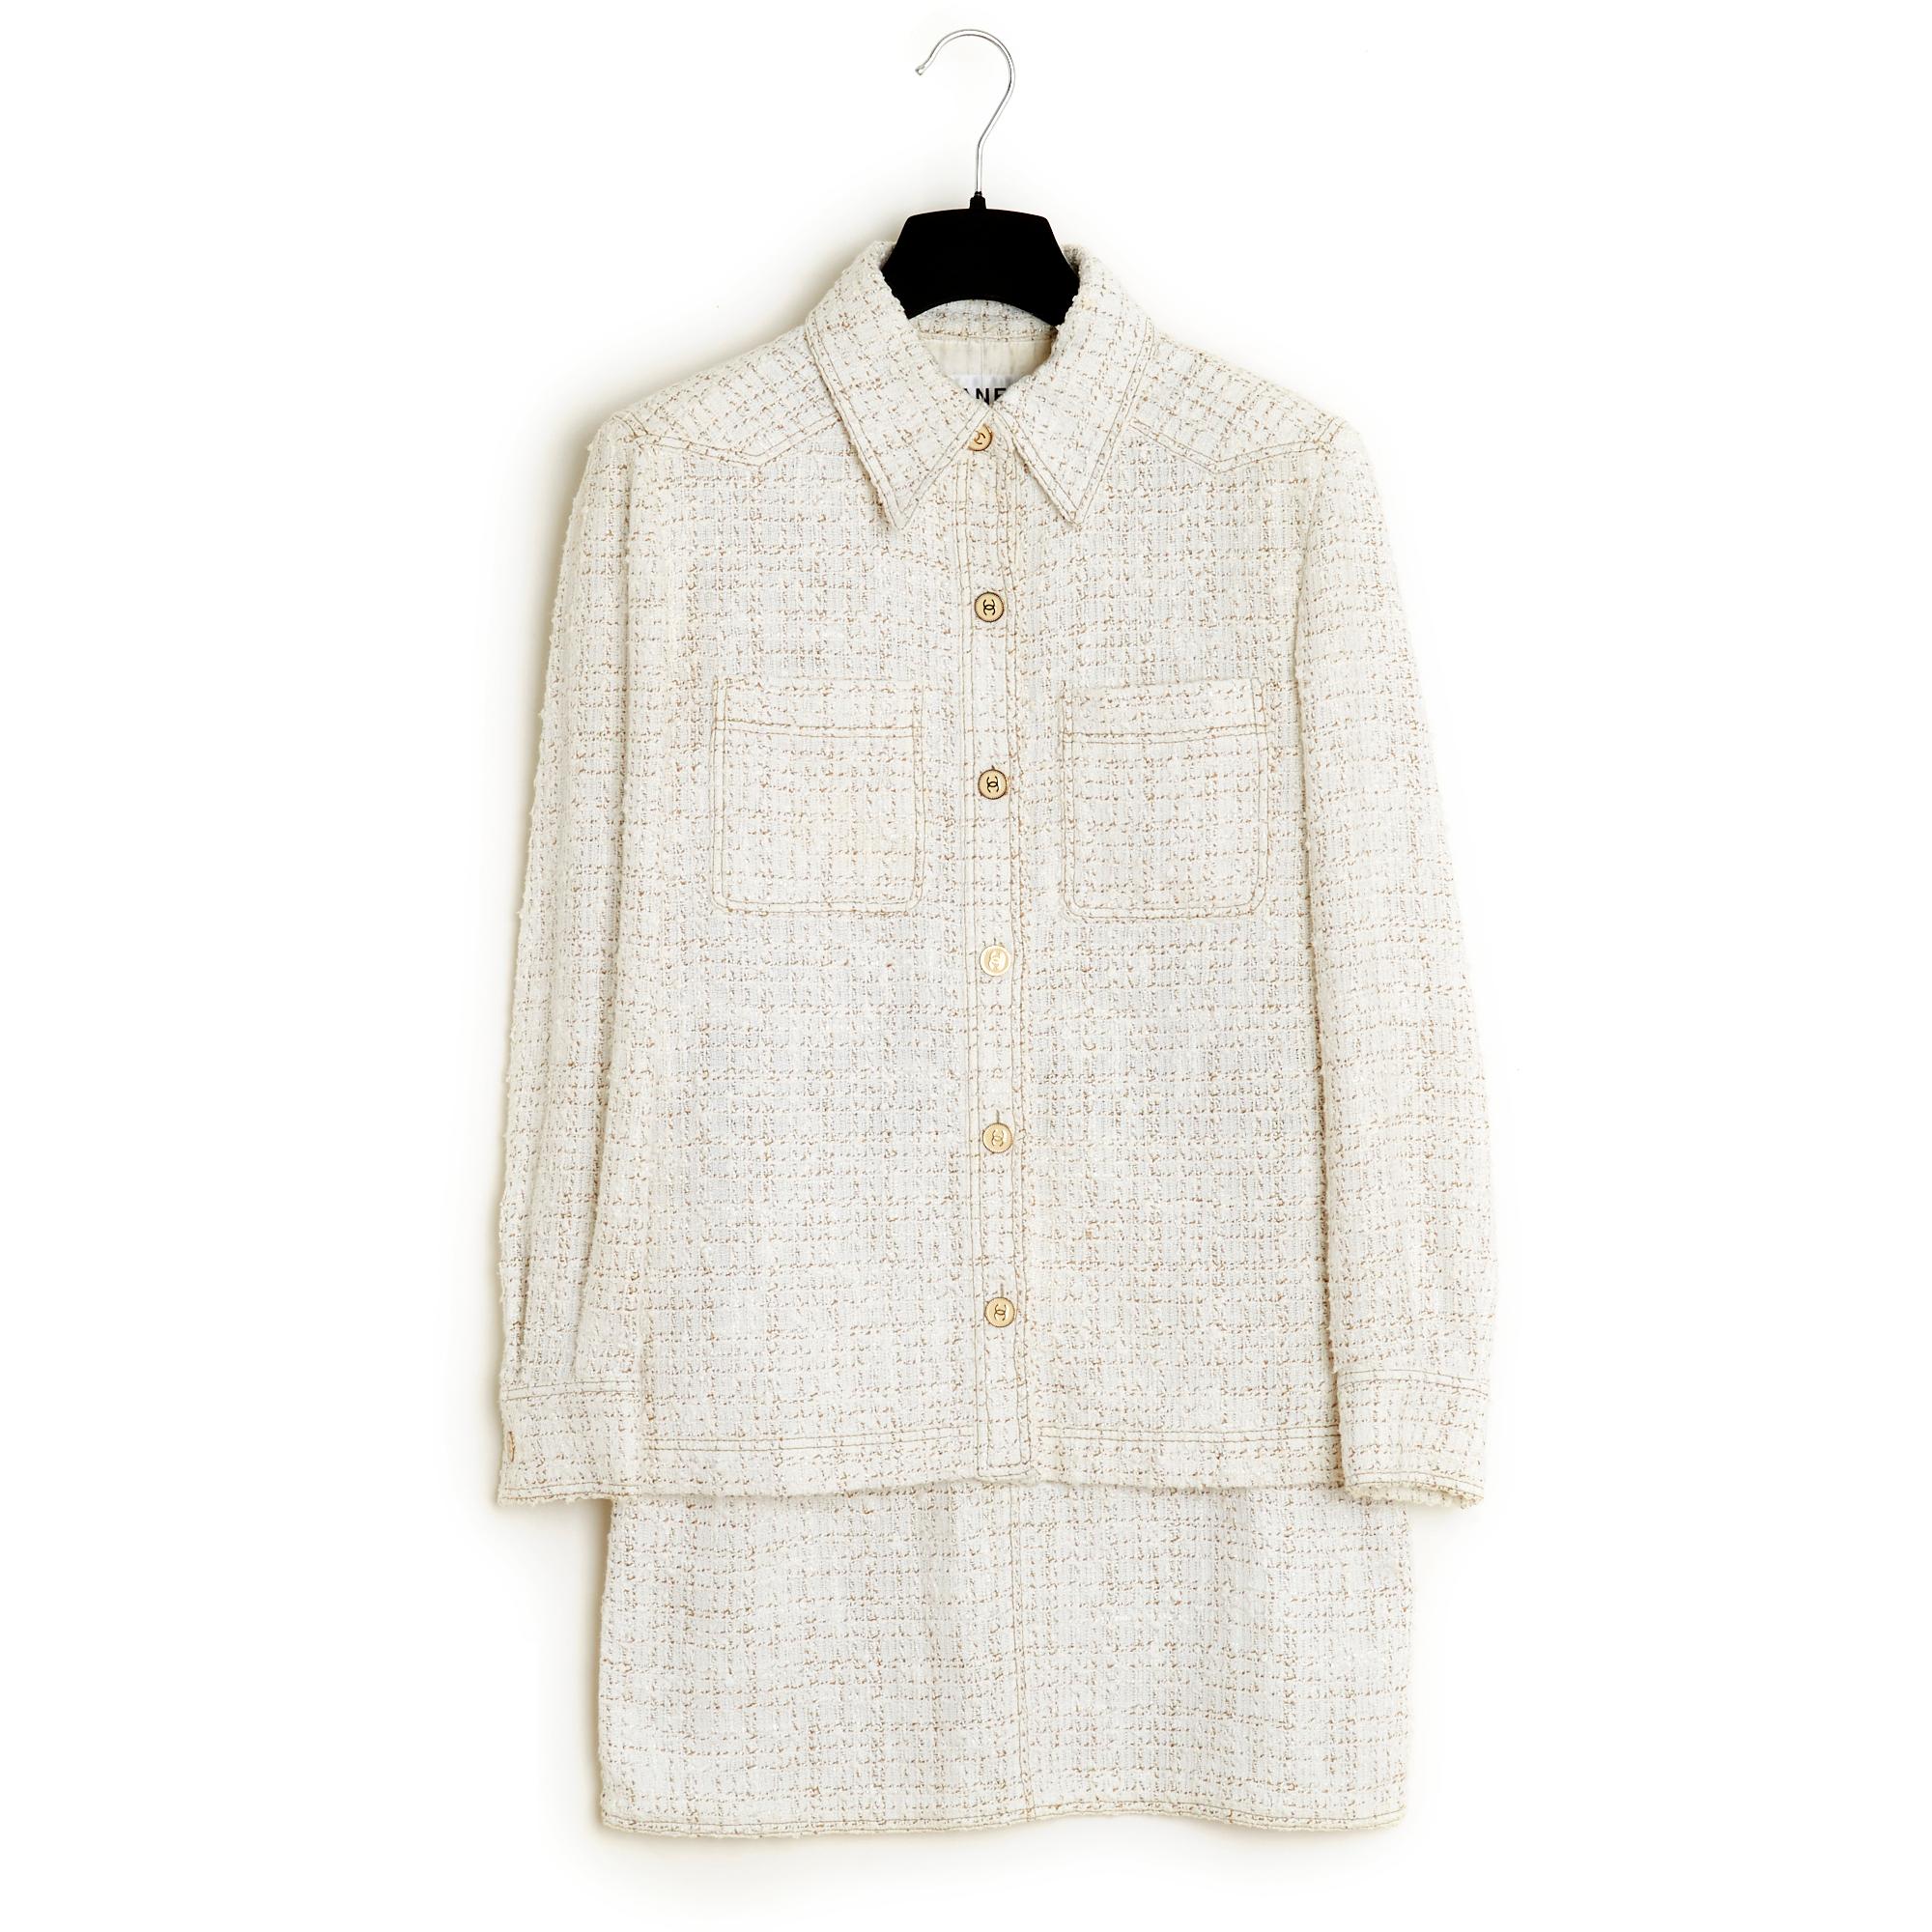 Chanel Frühjahr-Sommer-Kollektion 2001 in ecrufarbenem und beigem Baumwoll-Tweed, bestehend aus einer Hemdjacke mit klassischem Kragen, der mit 6 CC-Logo-Knöpfen geschlossen wird, 2 aufgesetzten Taschen auf der Brust, langen Ärmeln, die mit